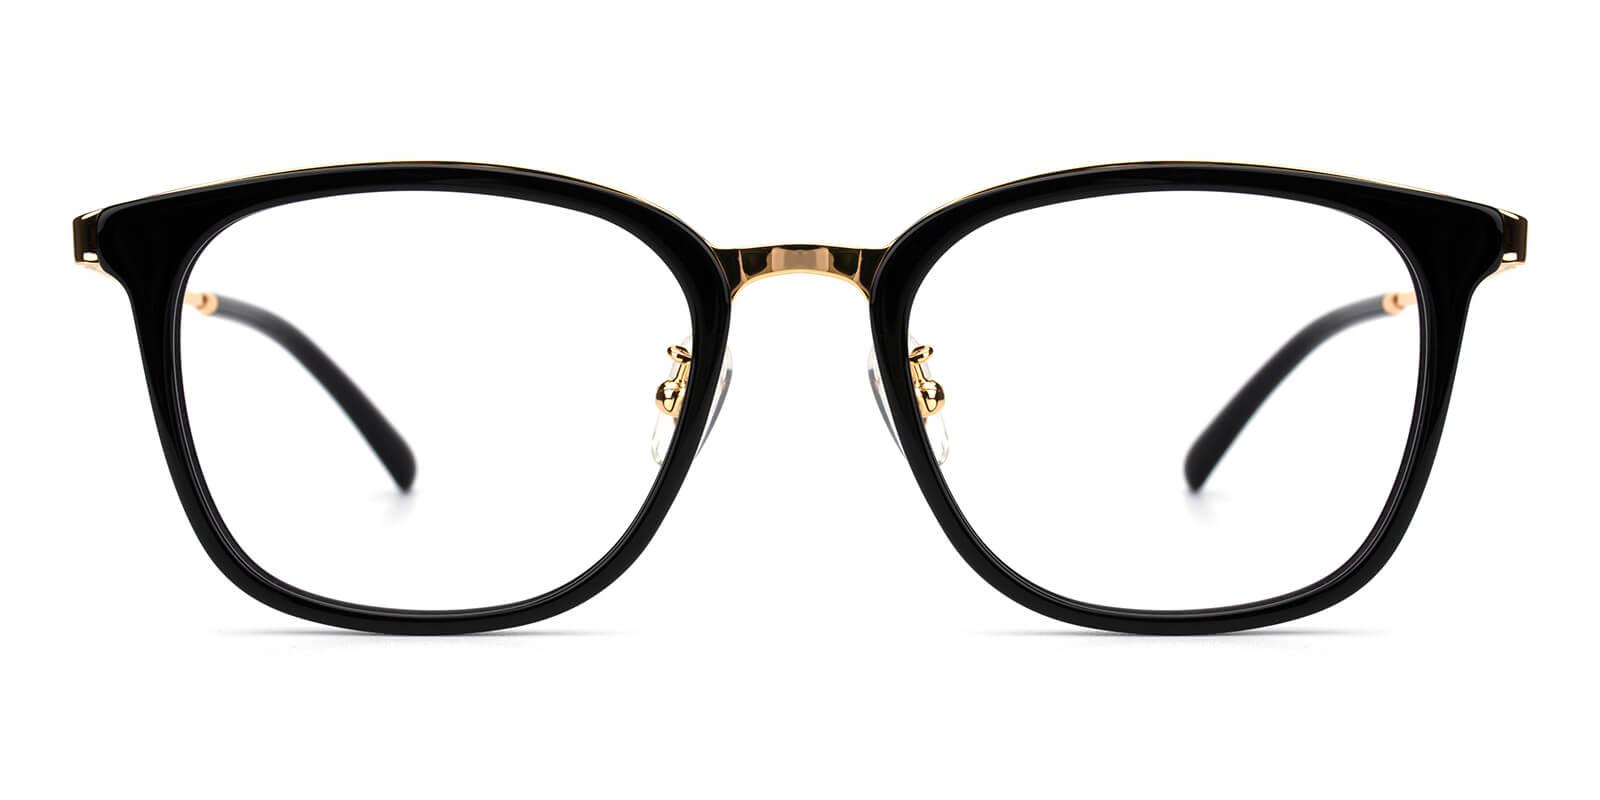 Keronito-Black-Rectangle-Metal-Eyeglasses-detail